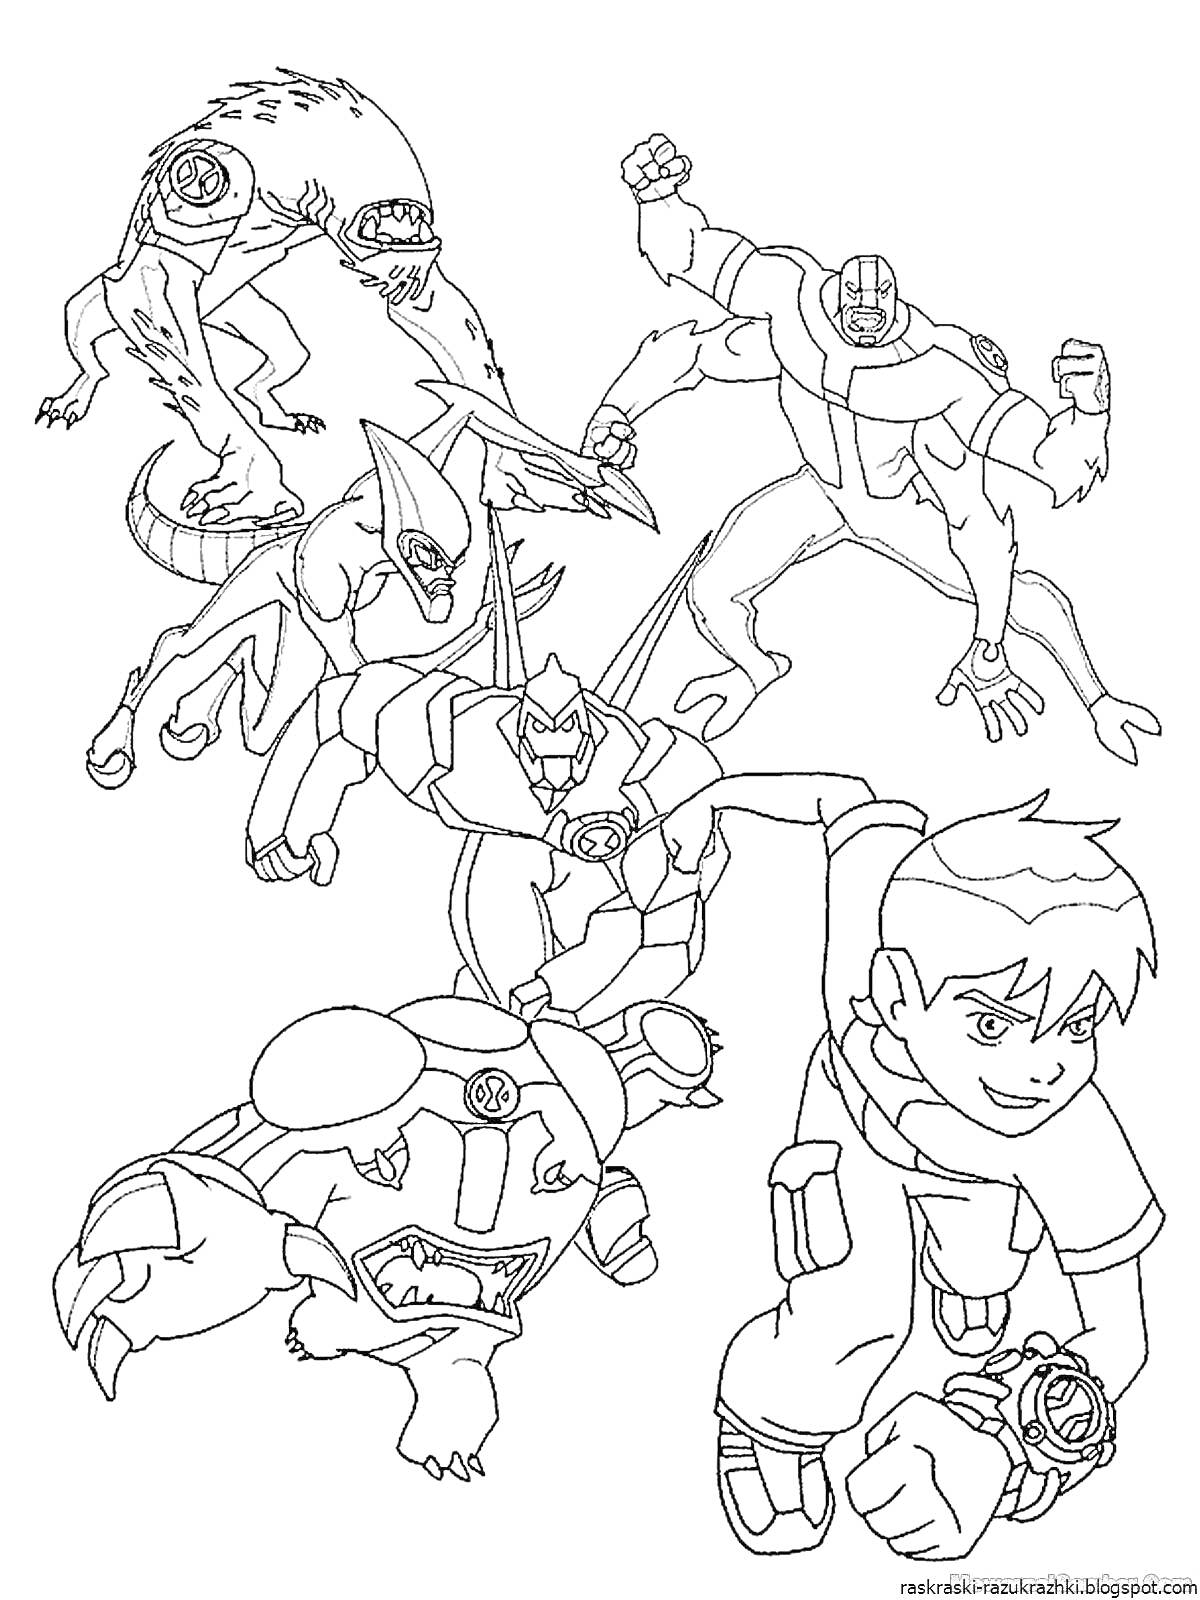 Раскраска Команда Петроникс - боевой мальчик и пять фантастических существ